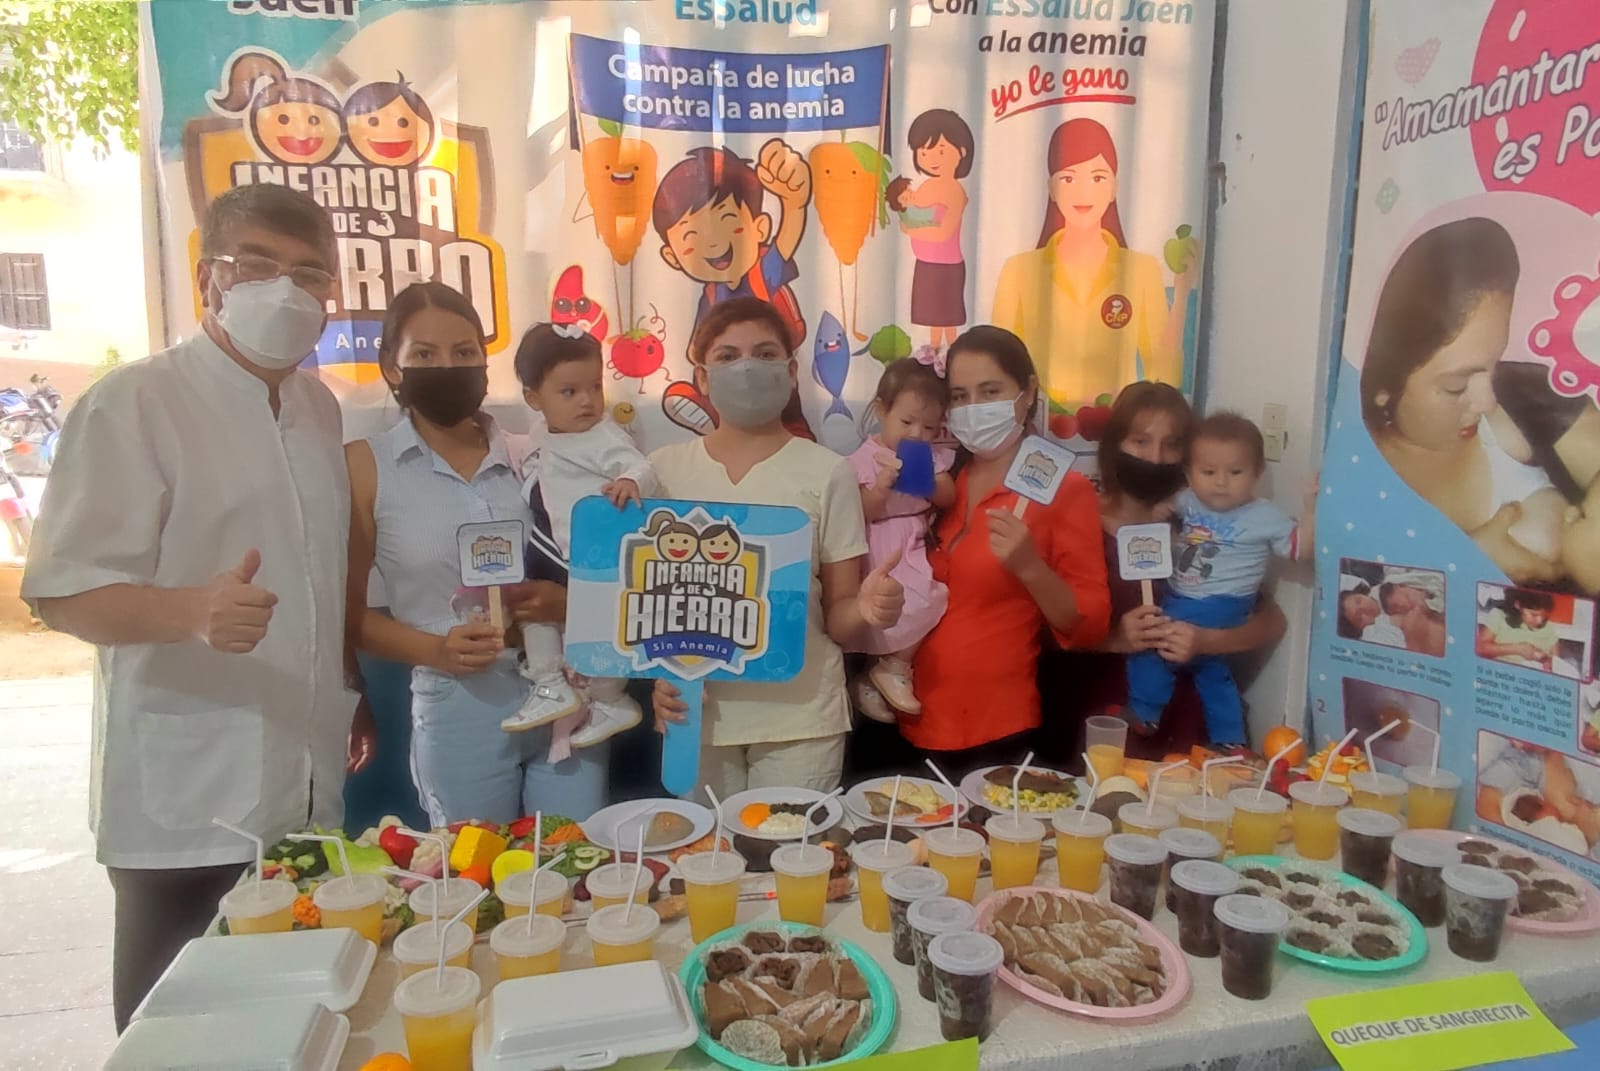 EsSalud Jaén promueve la prevención de la anemia en niños y gestantes